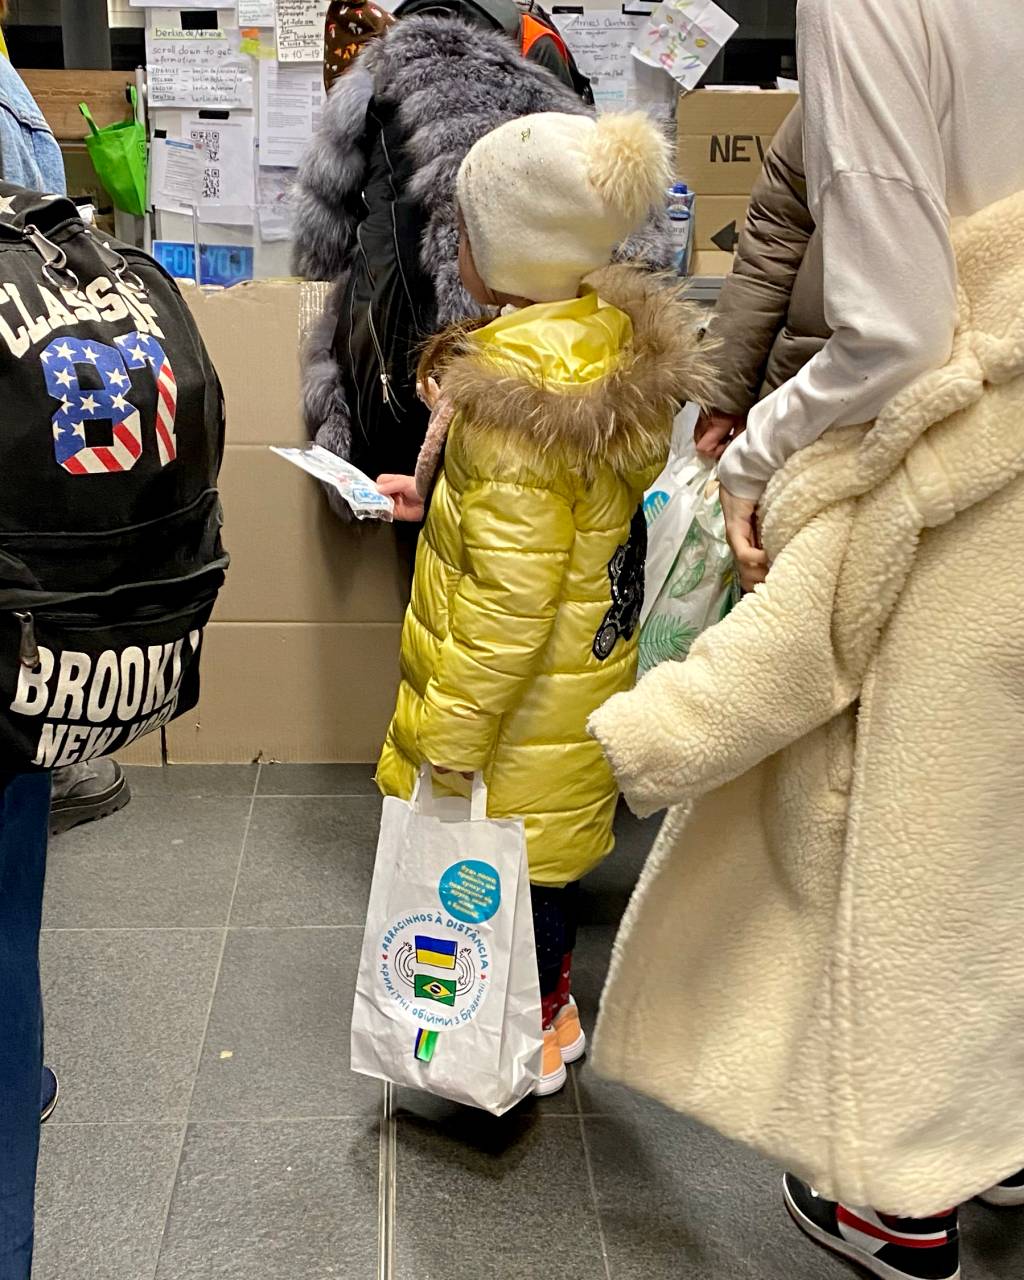 Crianças ucranianas recebem kit com brindes e cartas em estação na Ucrânia. A foto exibe uma criança com casaco amarelo vista de lado com sacolinha na mão.